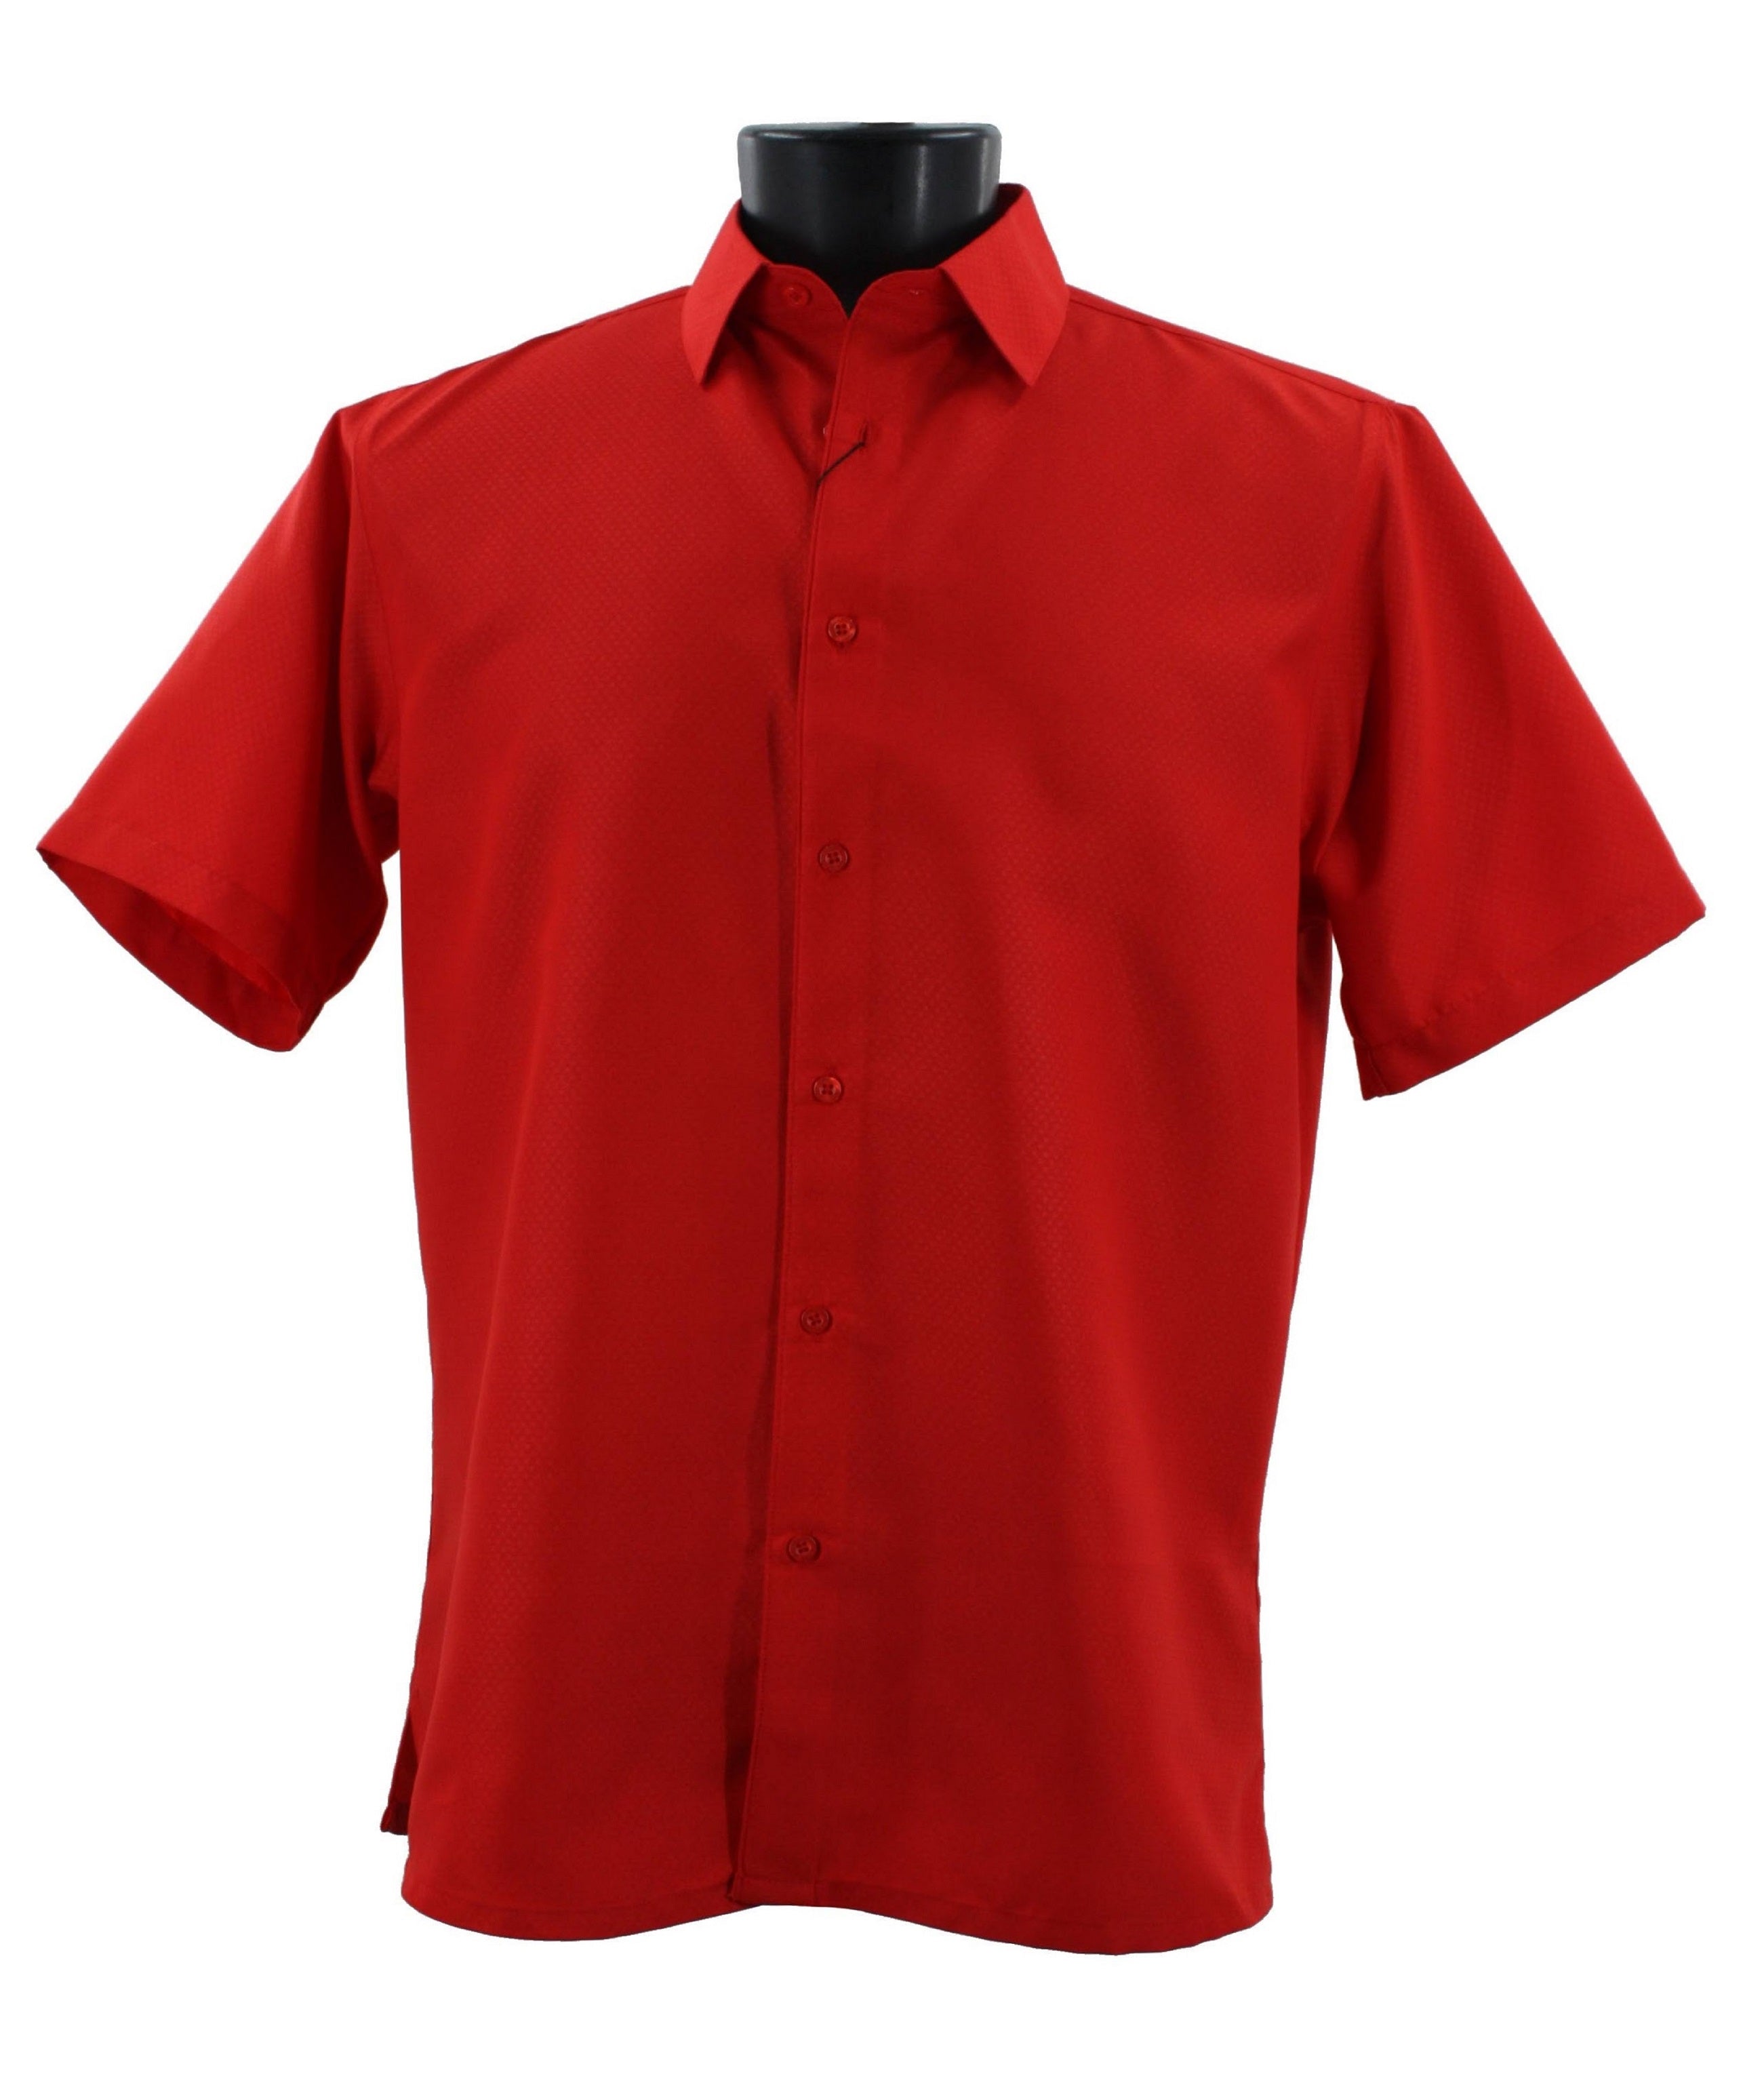 Sangi Short Sleeve Shirt S 2026 Red